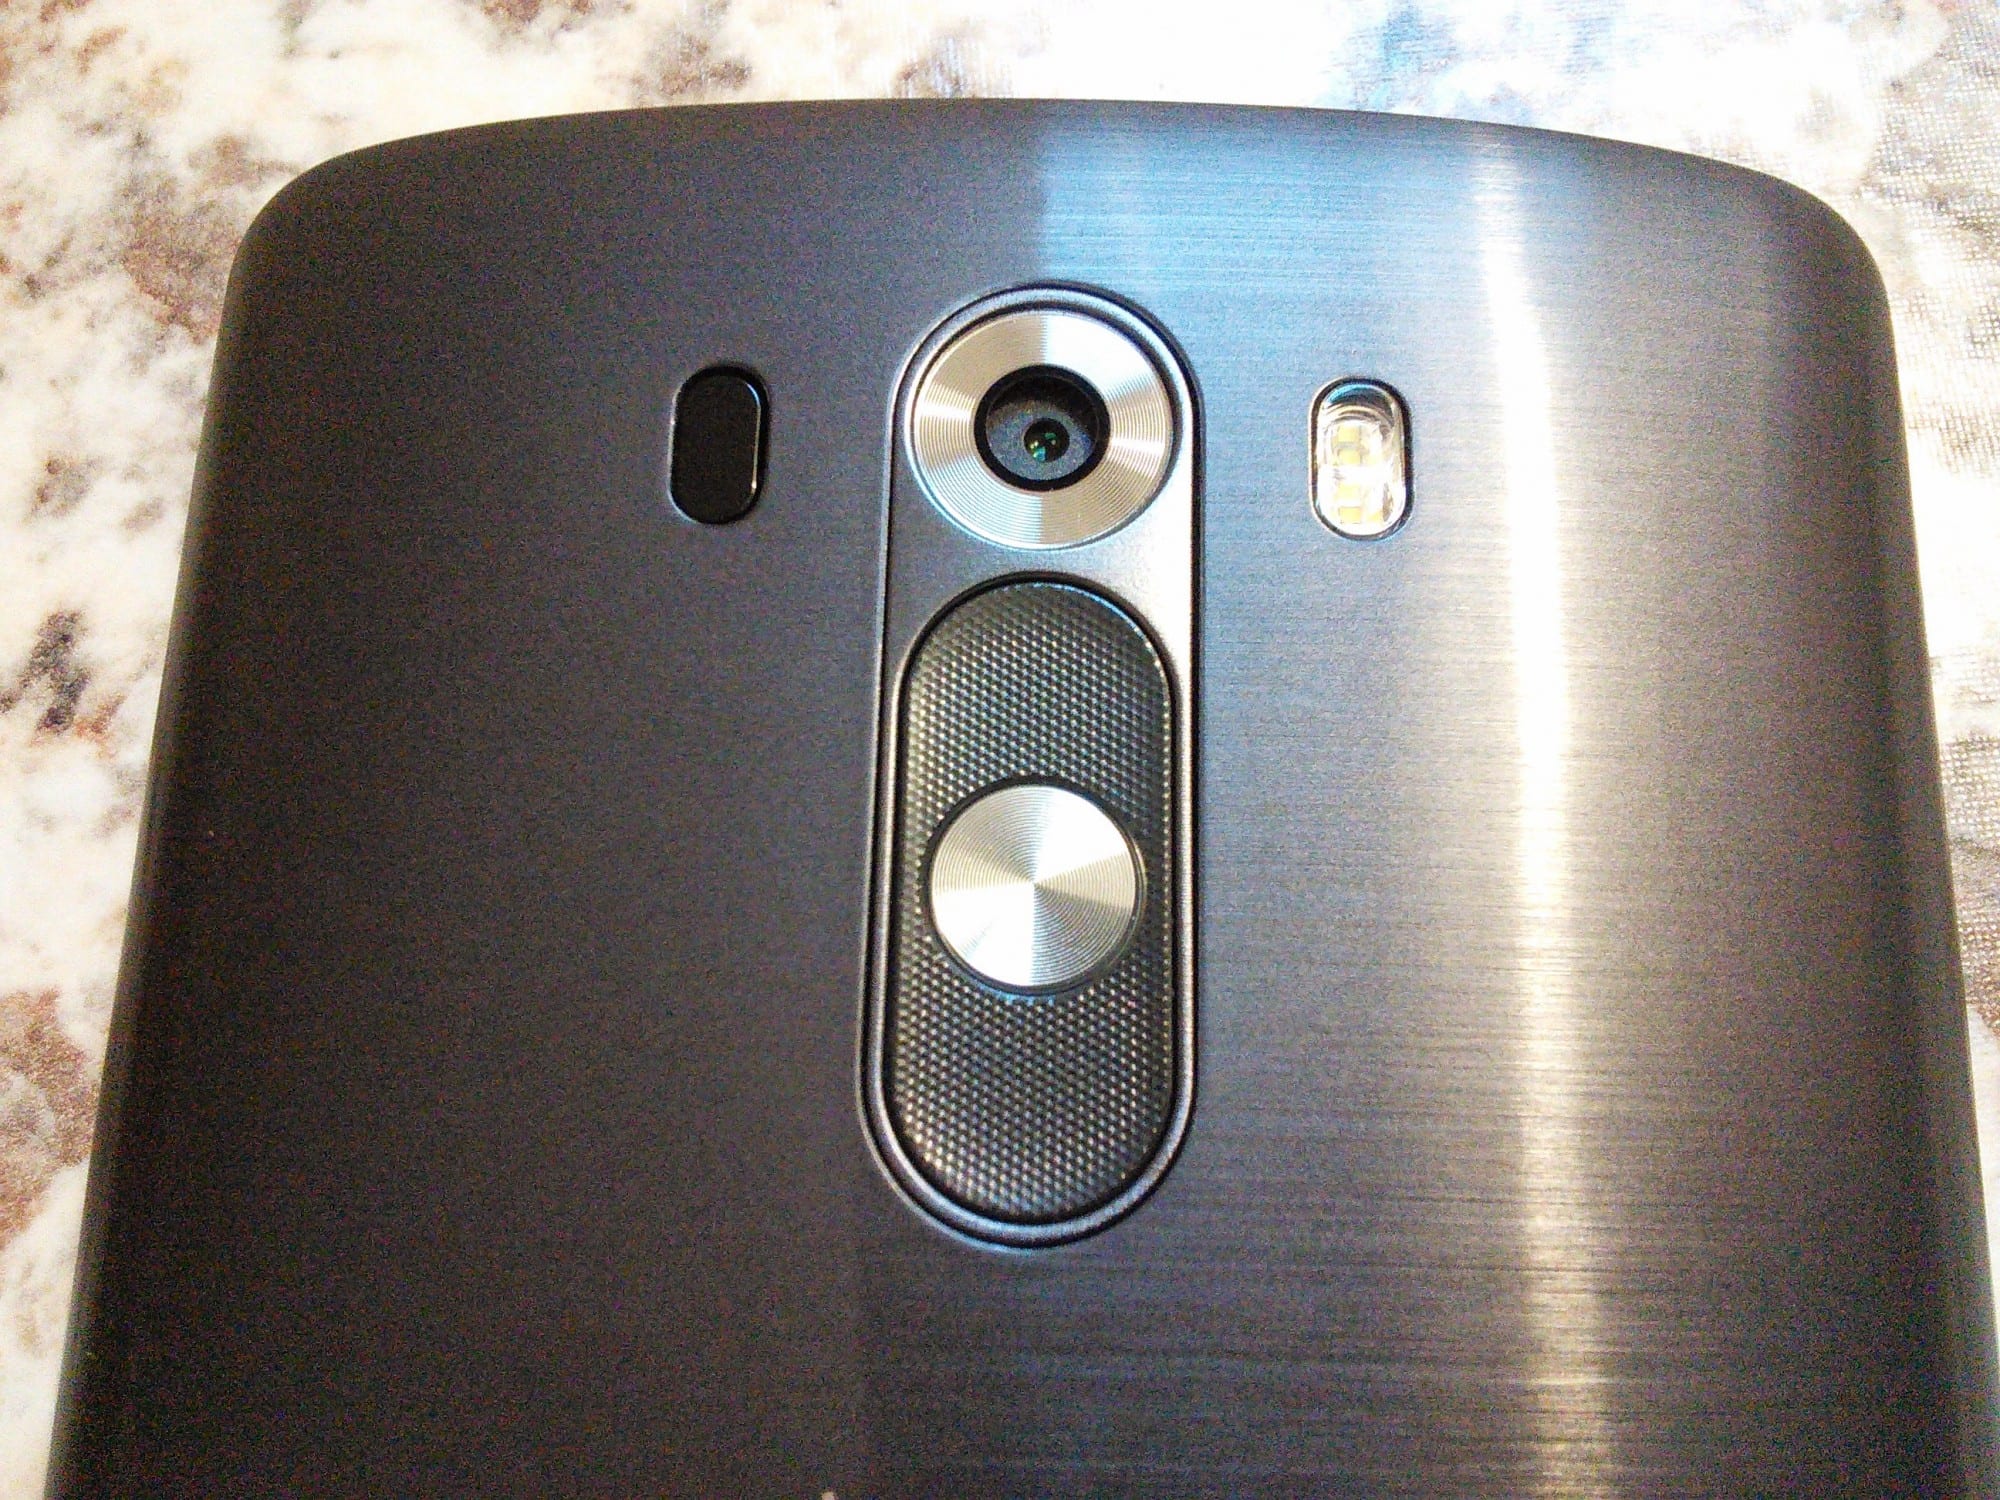 LG G3 camera.